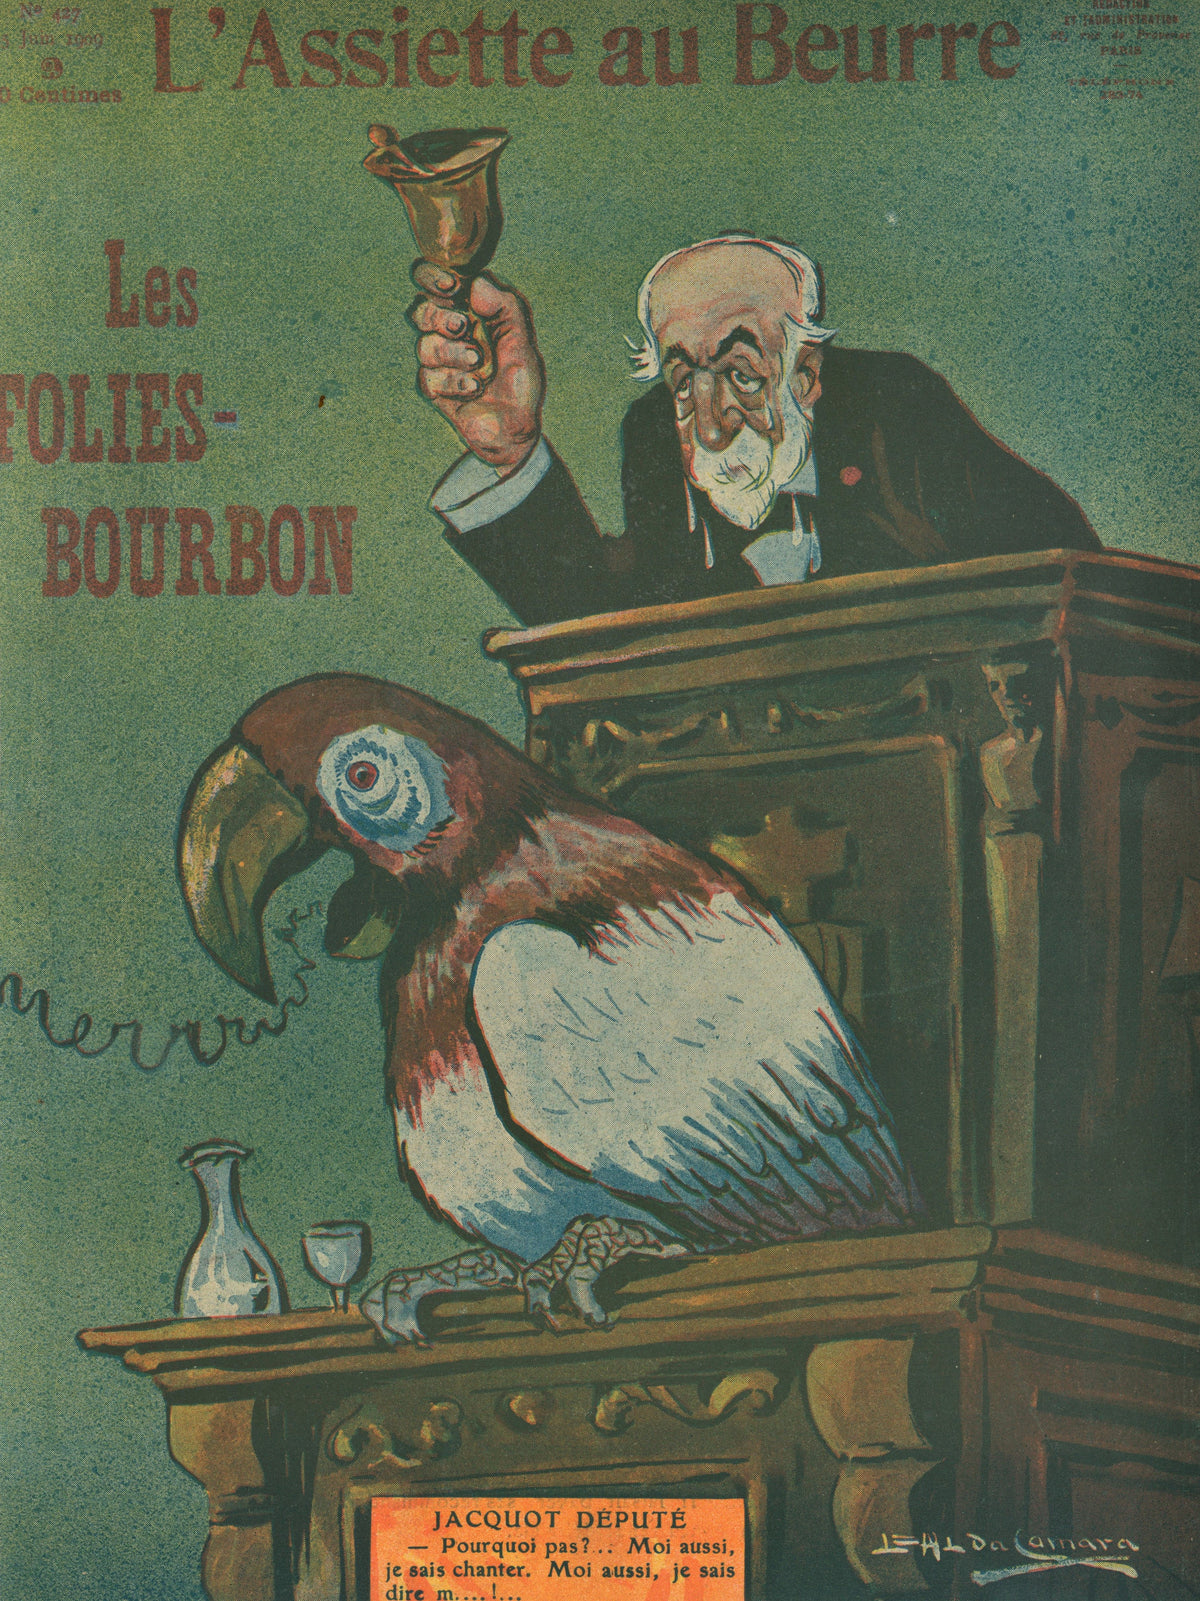 Les Folies-Bourbon- French Satirical Comic - Authentic Vintage Antique Print